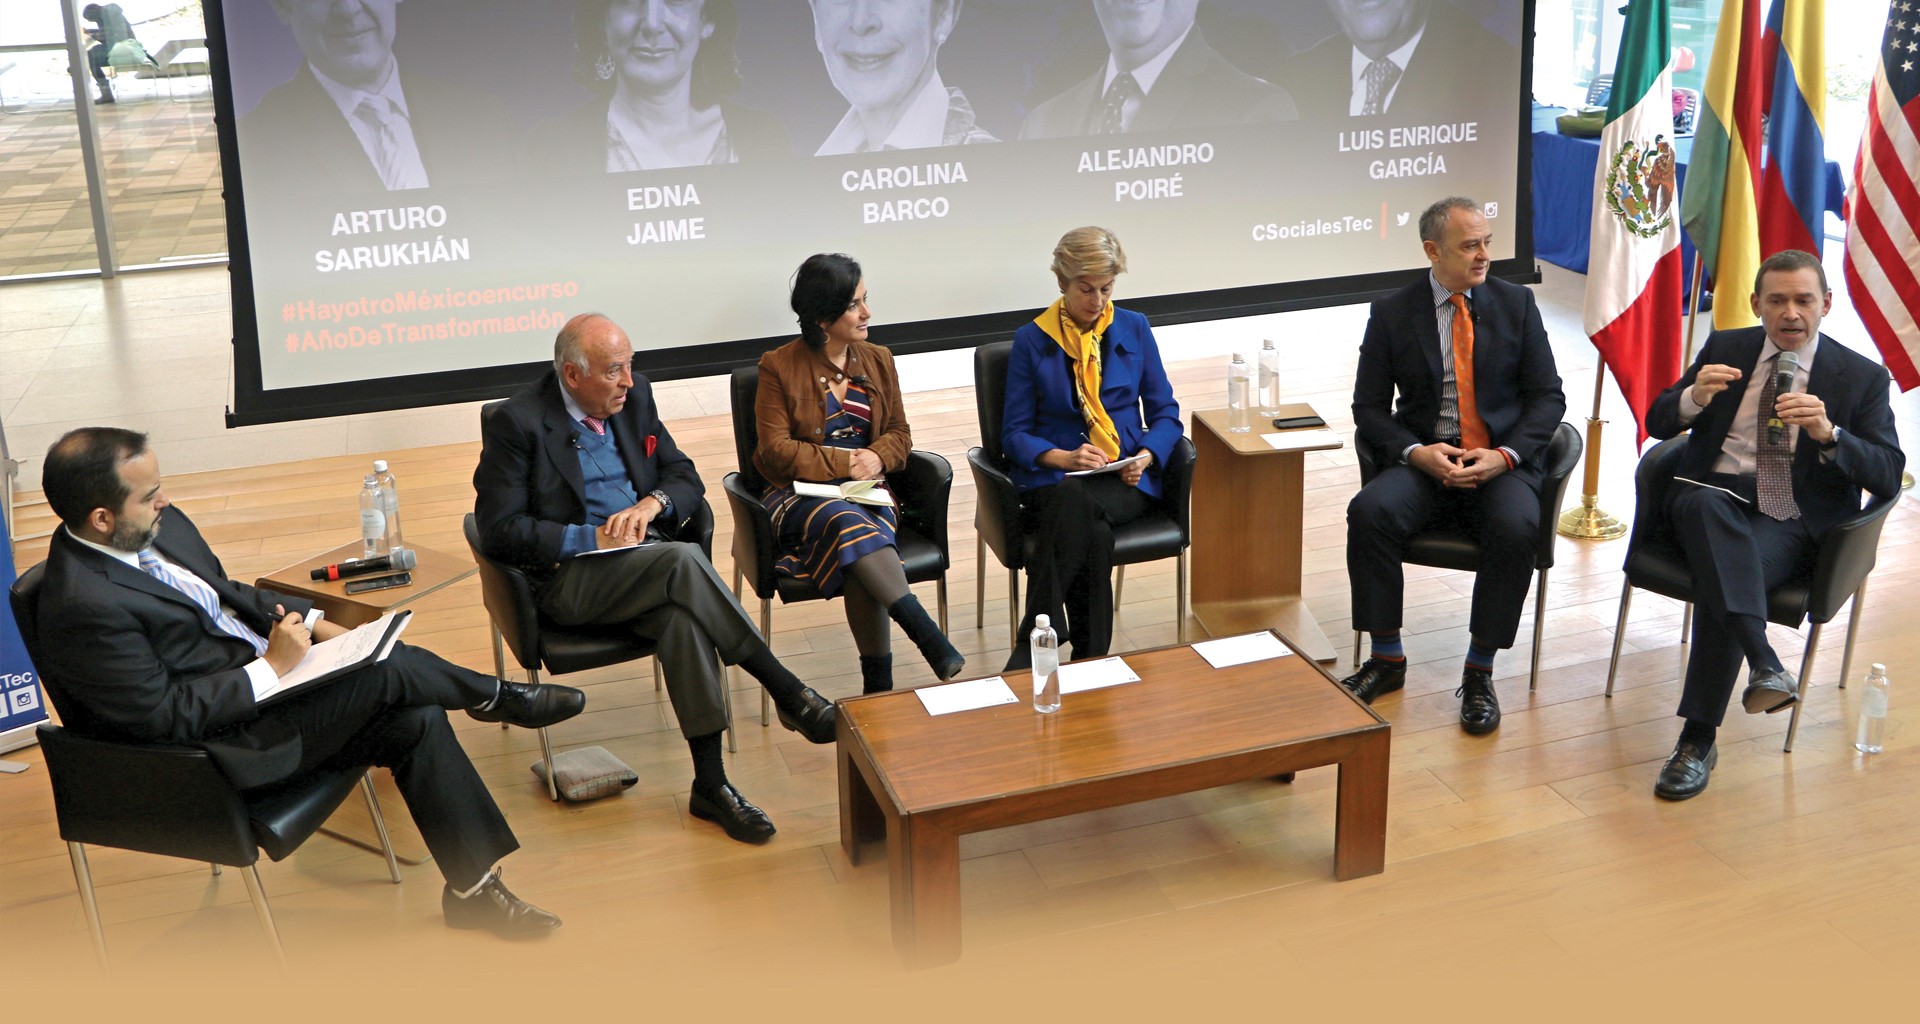 Panel sobre América Latina y EU organizado por la Escuela de Ciencias Sociales y Gobierno 